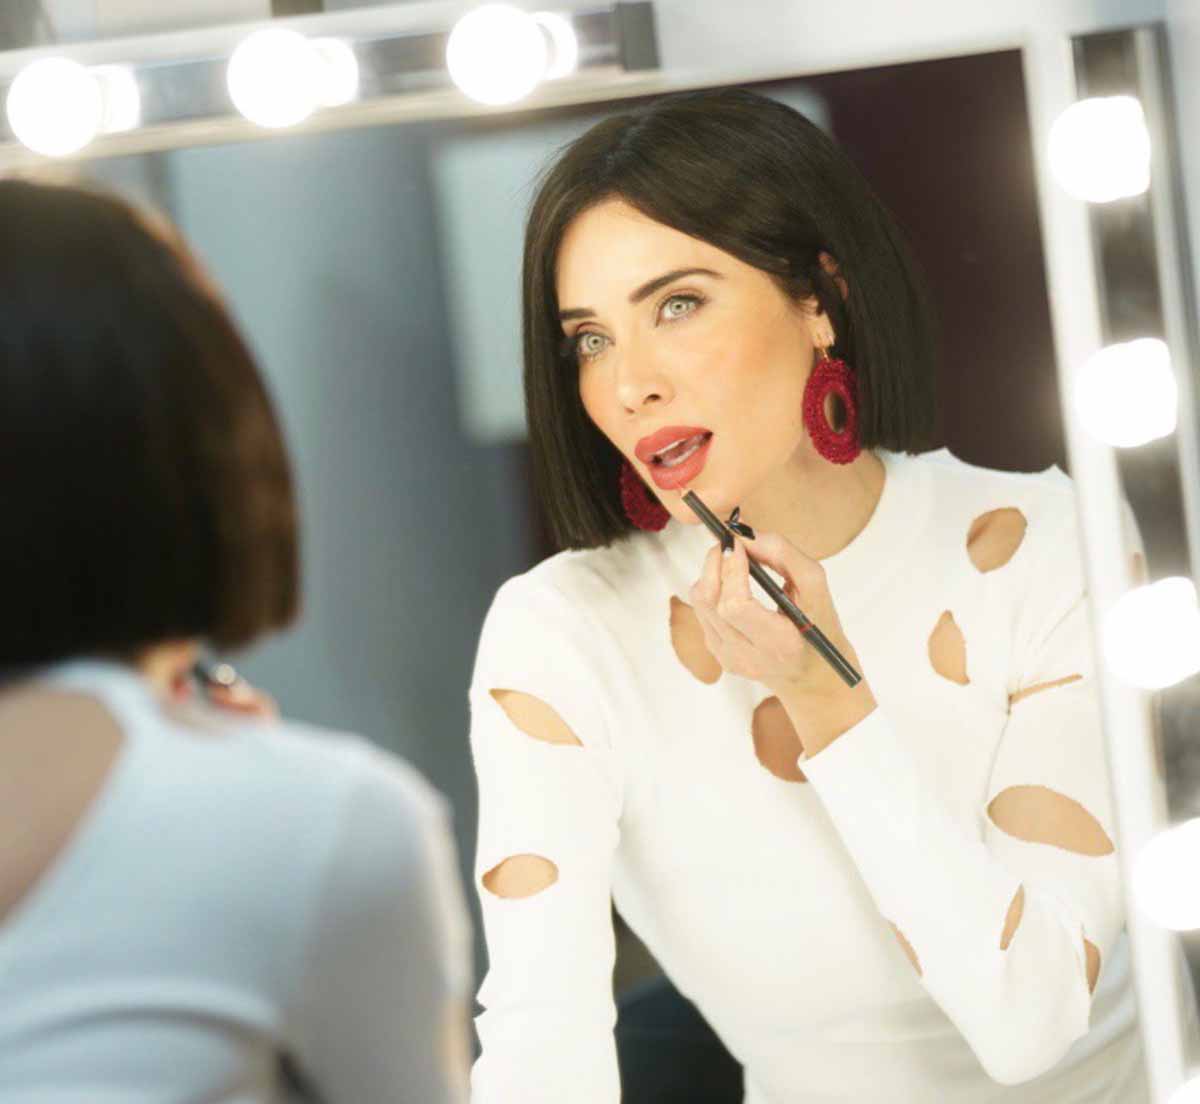 El sorprendente 'look' de Pilar Rubio: ¡Luce el mismo corte de pelo que Tamara Falcó!